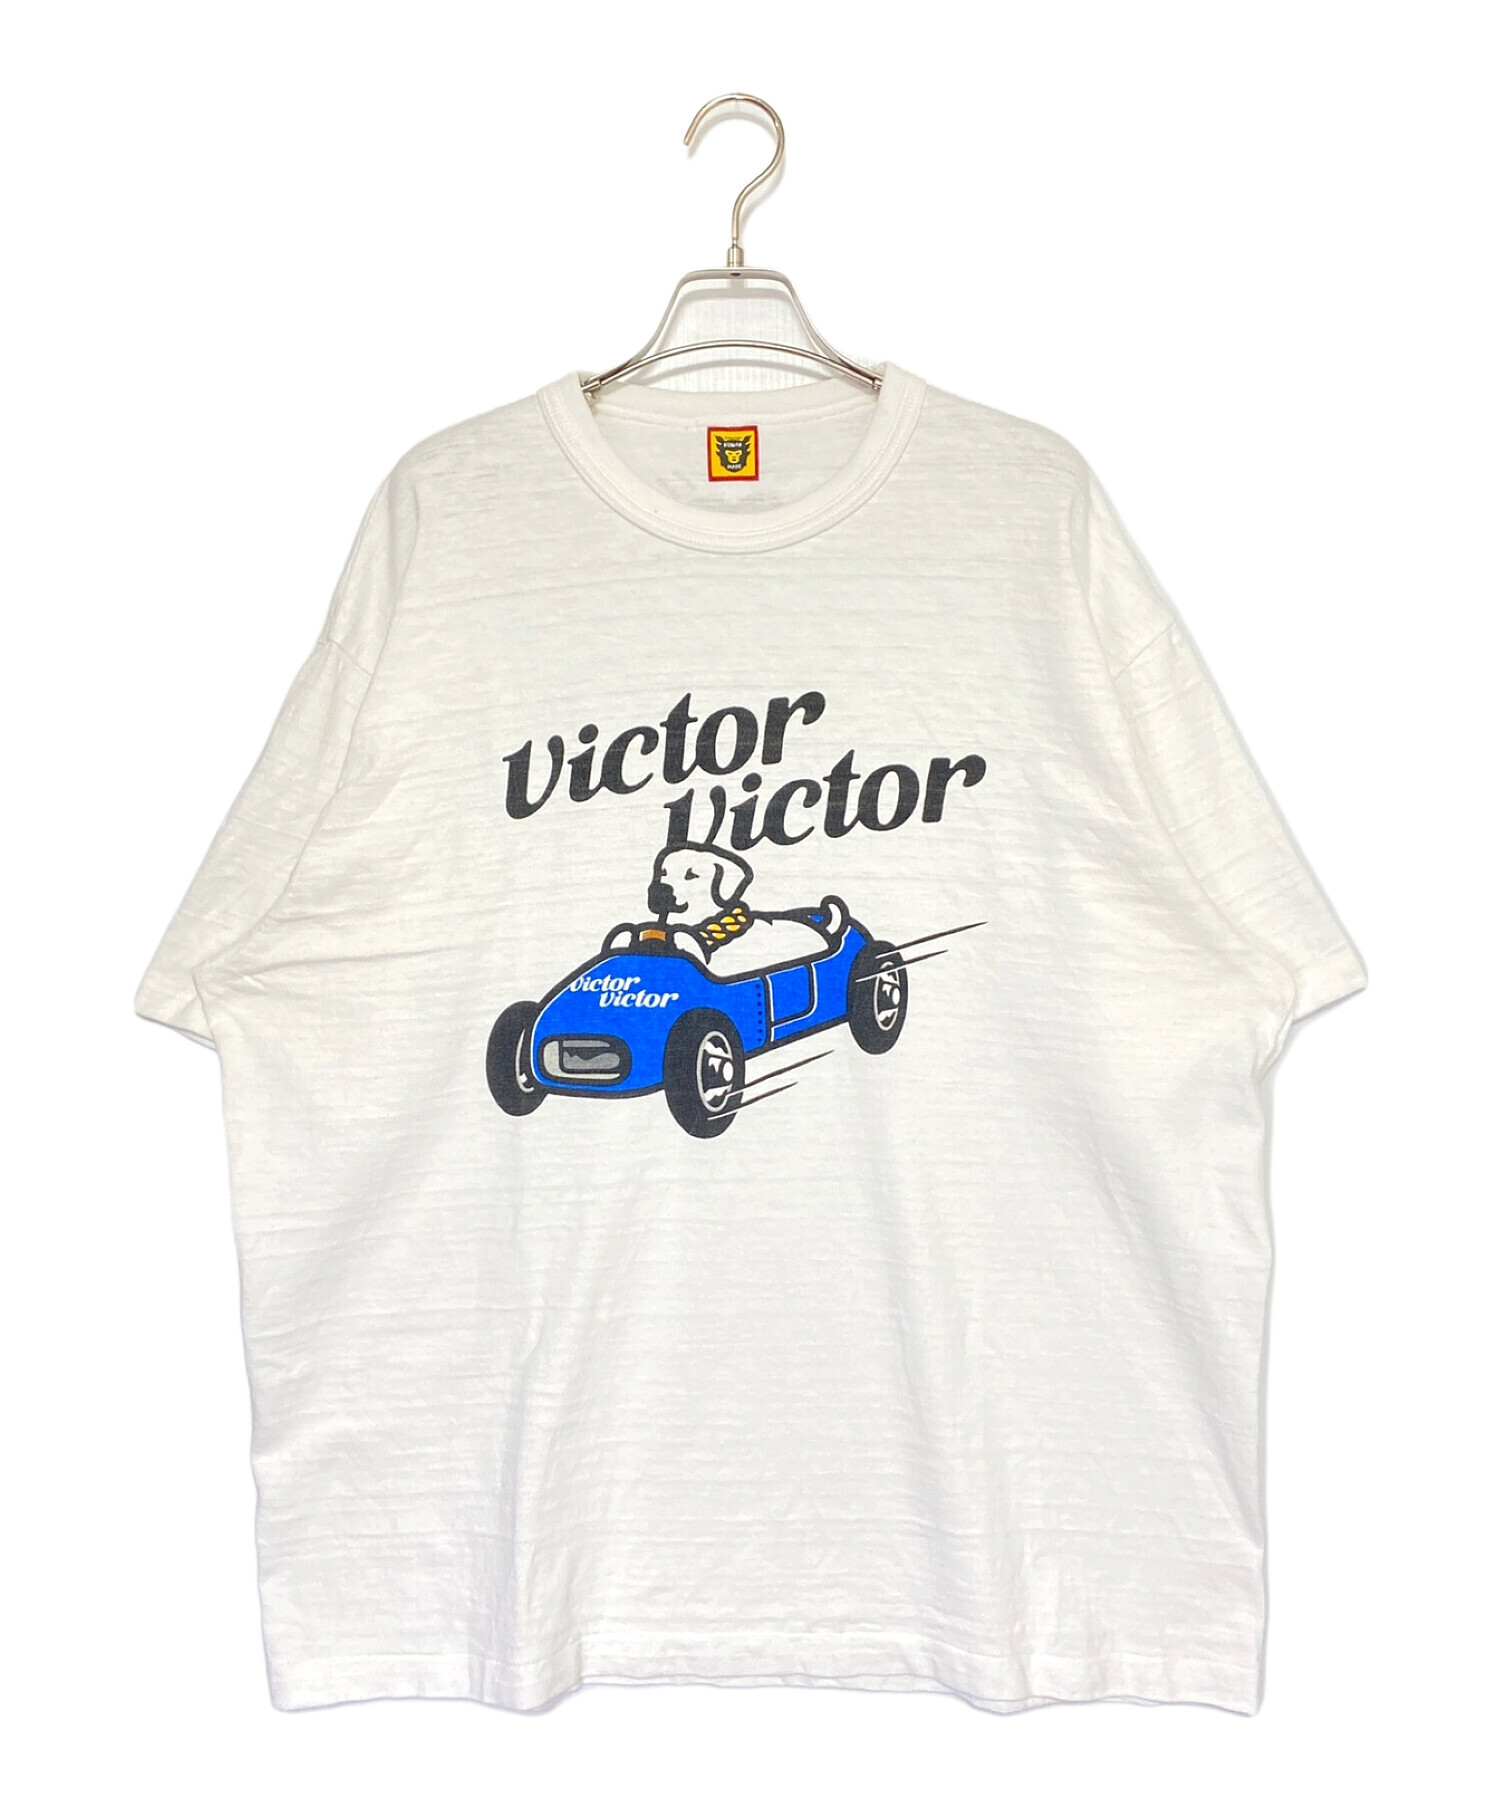 nigoHUMAN MADE (ヒューマンメイド) Victor Victor Worldwide (ヴィクター ヴィクター ワールドワイド) VICTOR  VICTOR T-SHIRT ホワイト サイズ:3XL